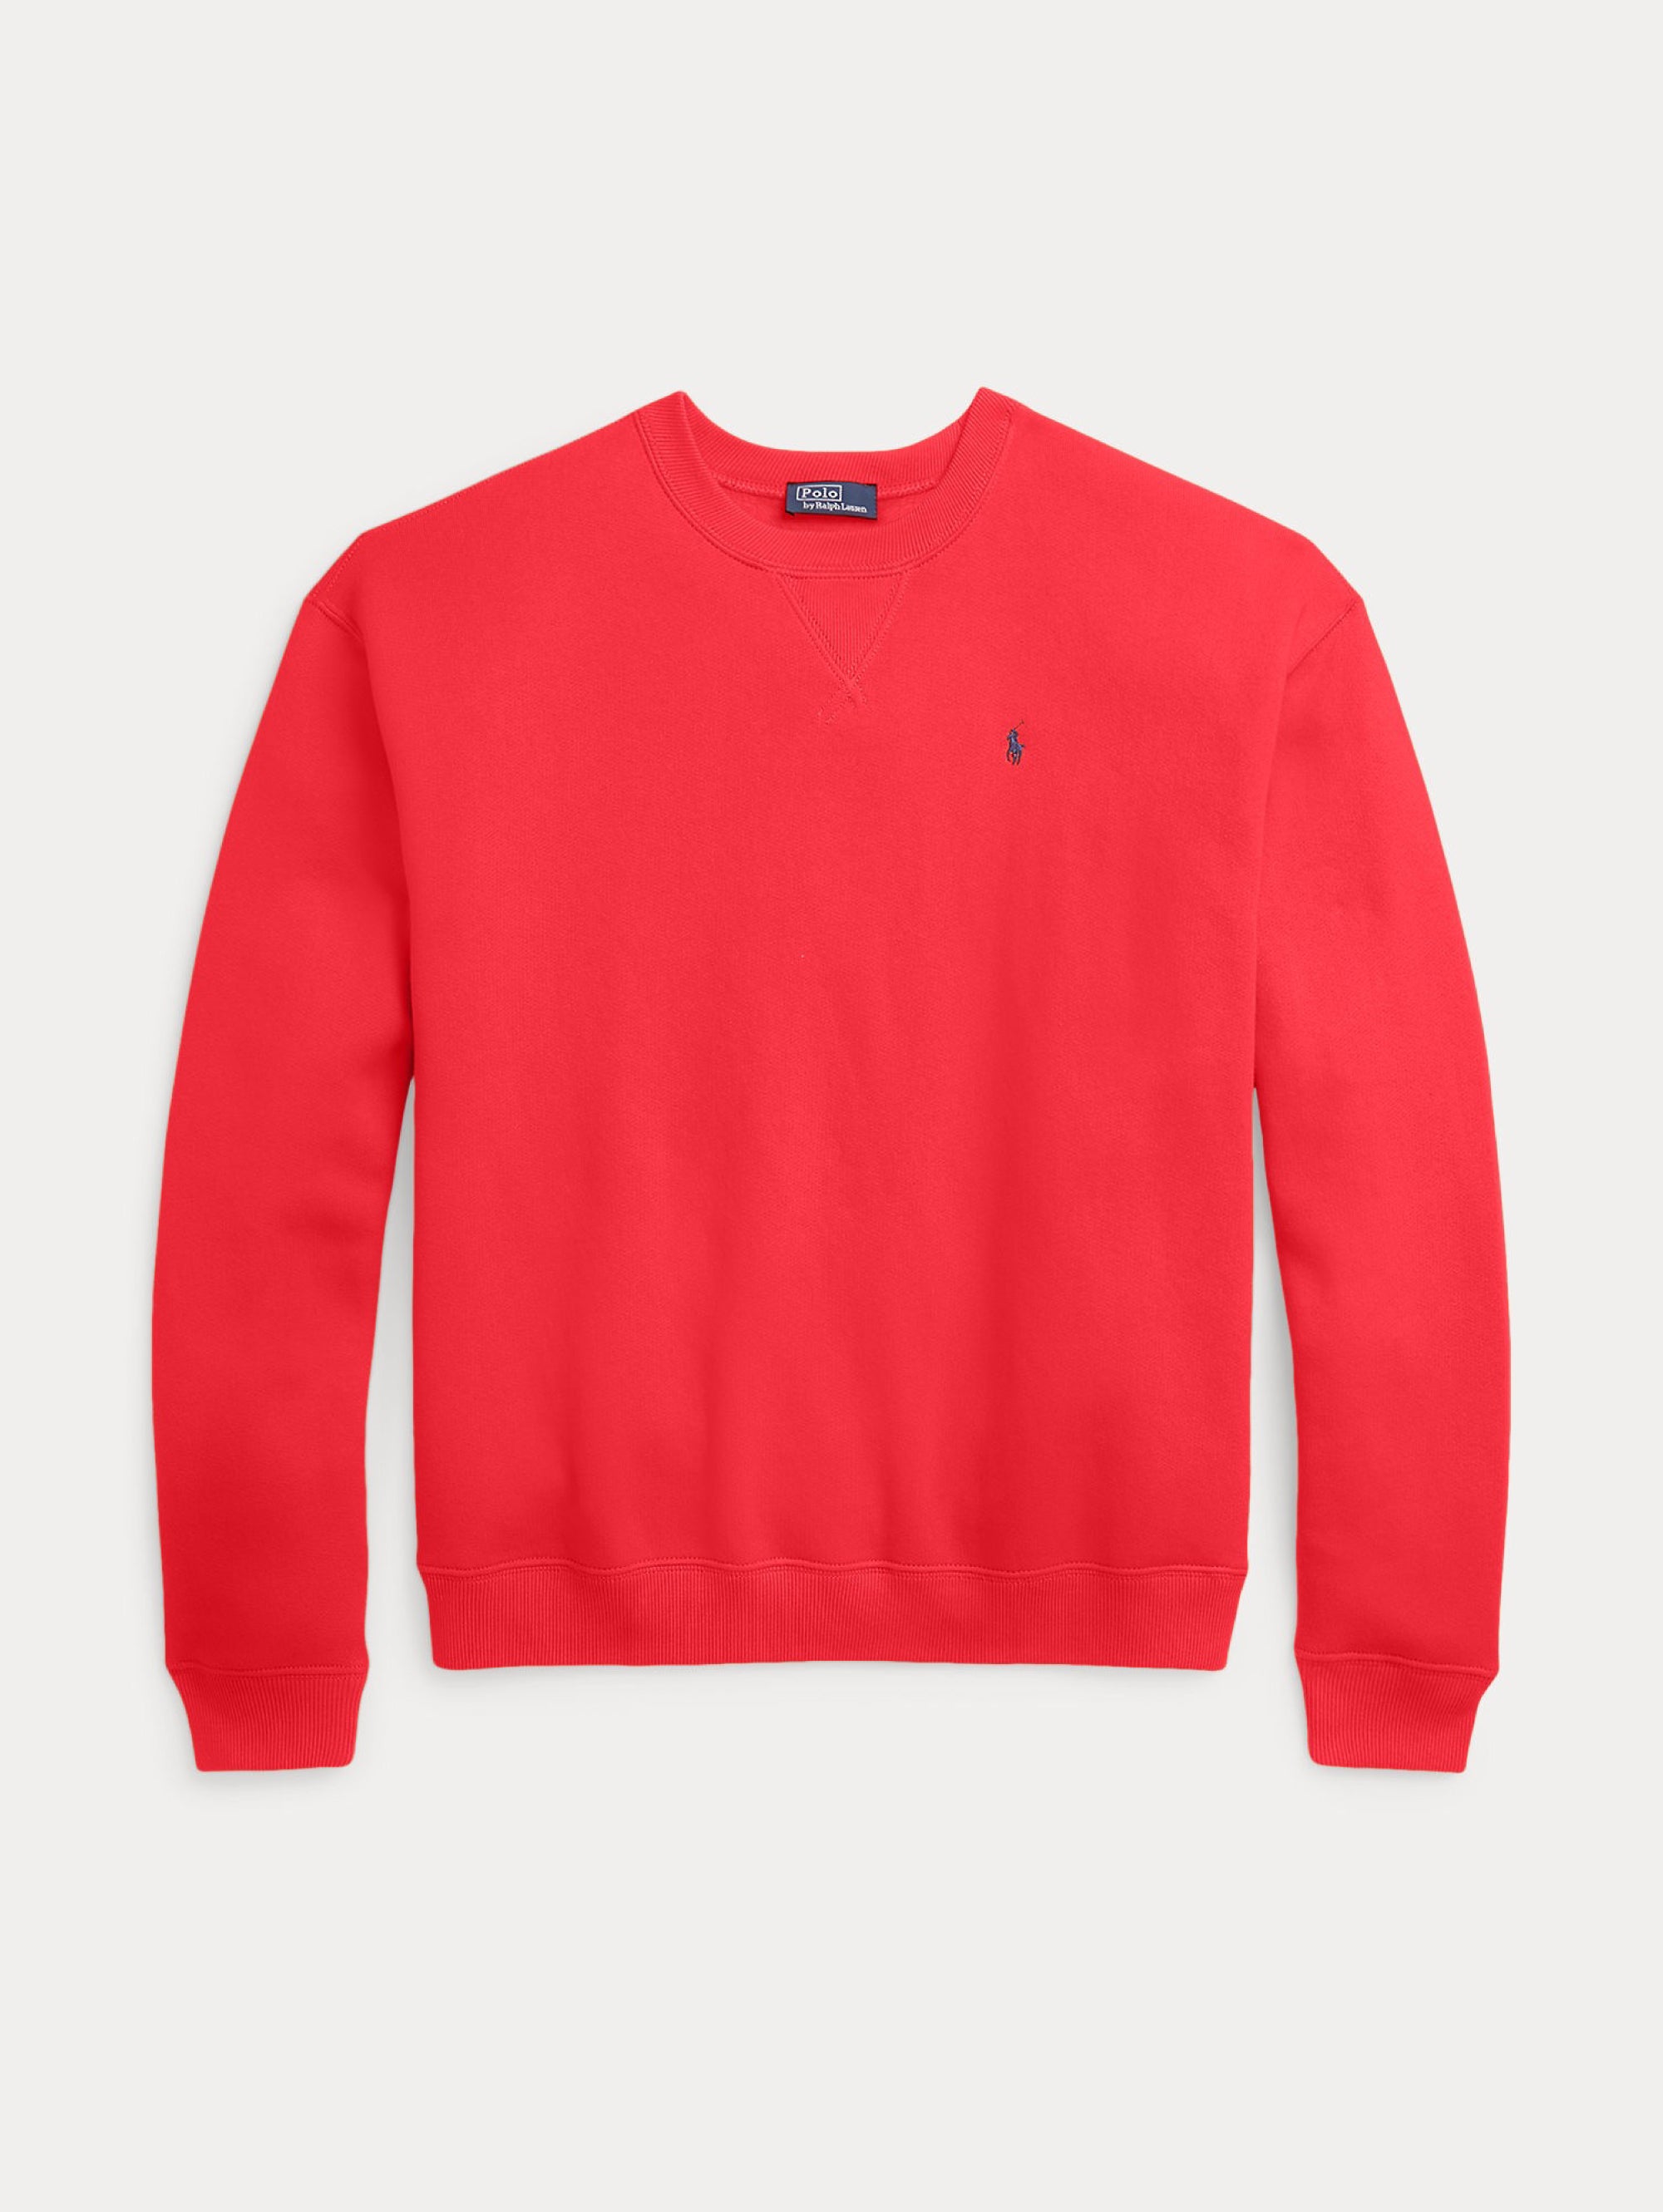 Rotes Sweatshirt mit Rundhalsausschnitt und entspannter Passform